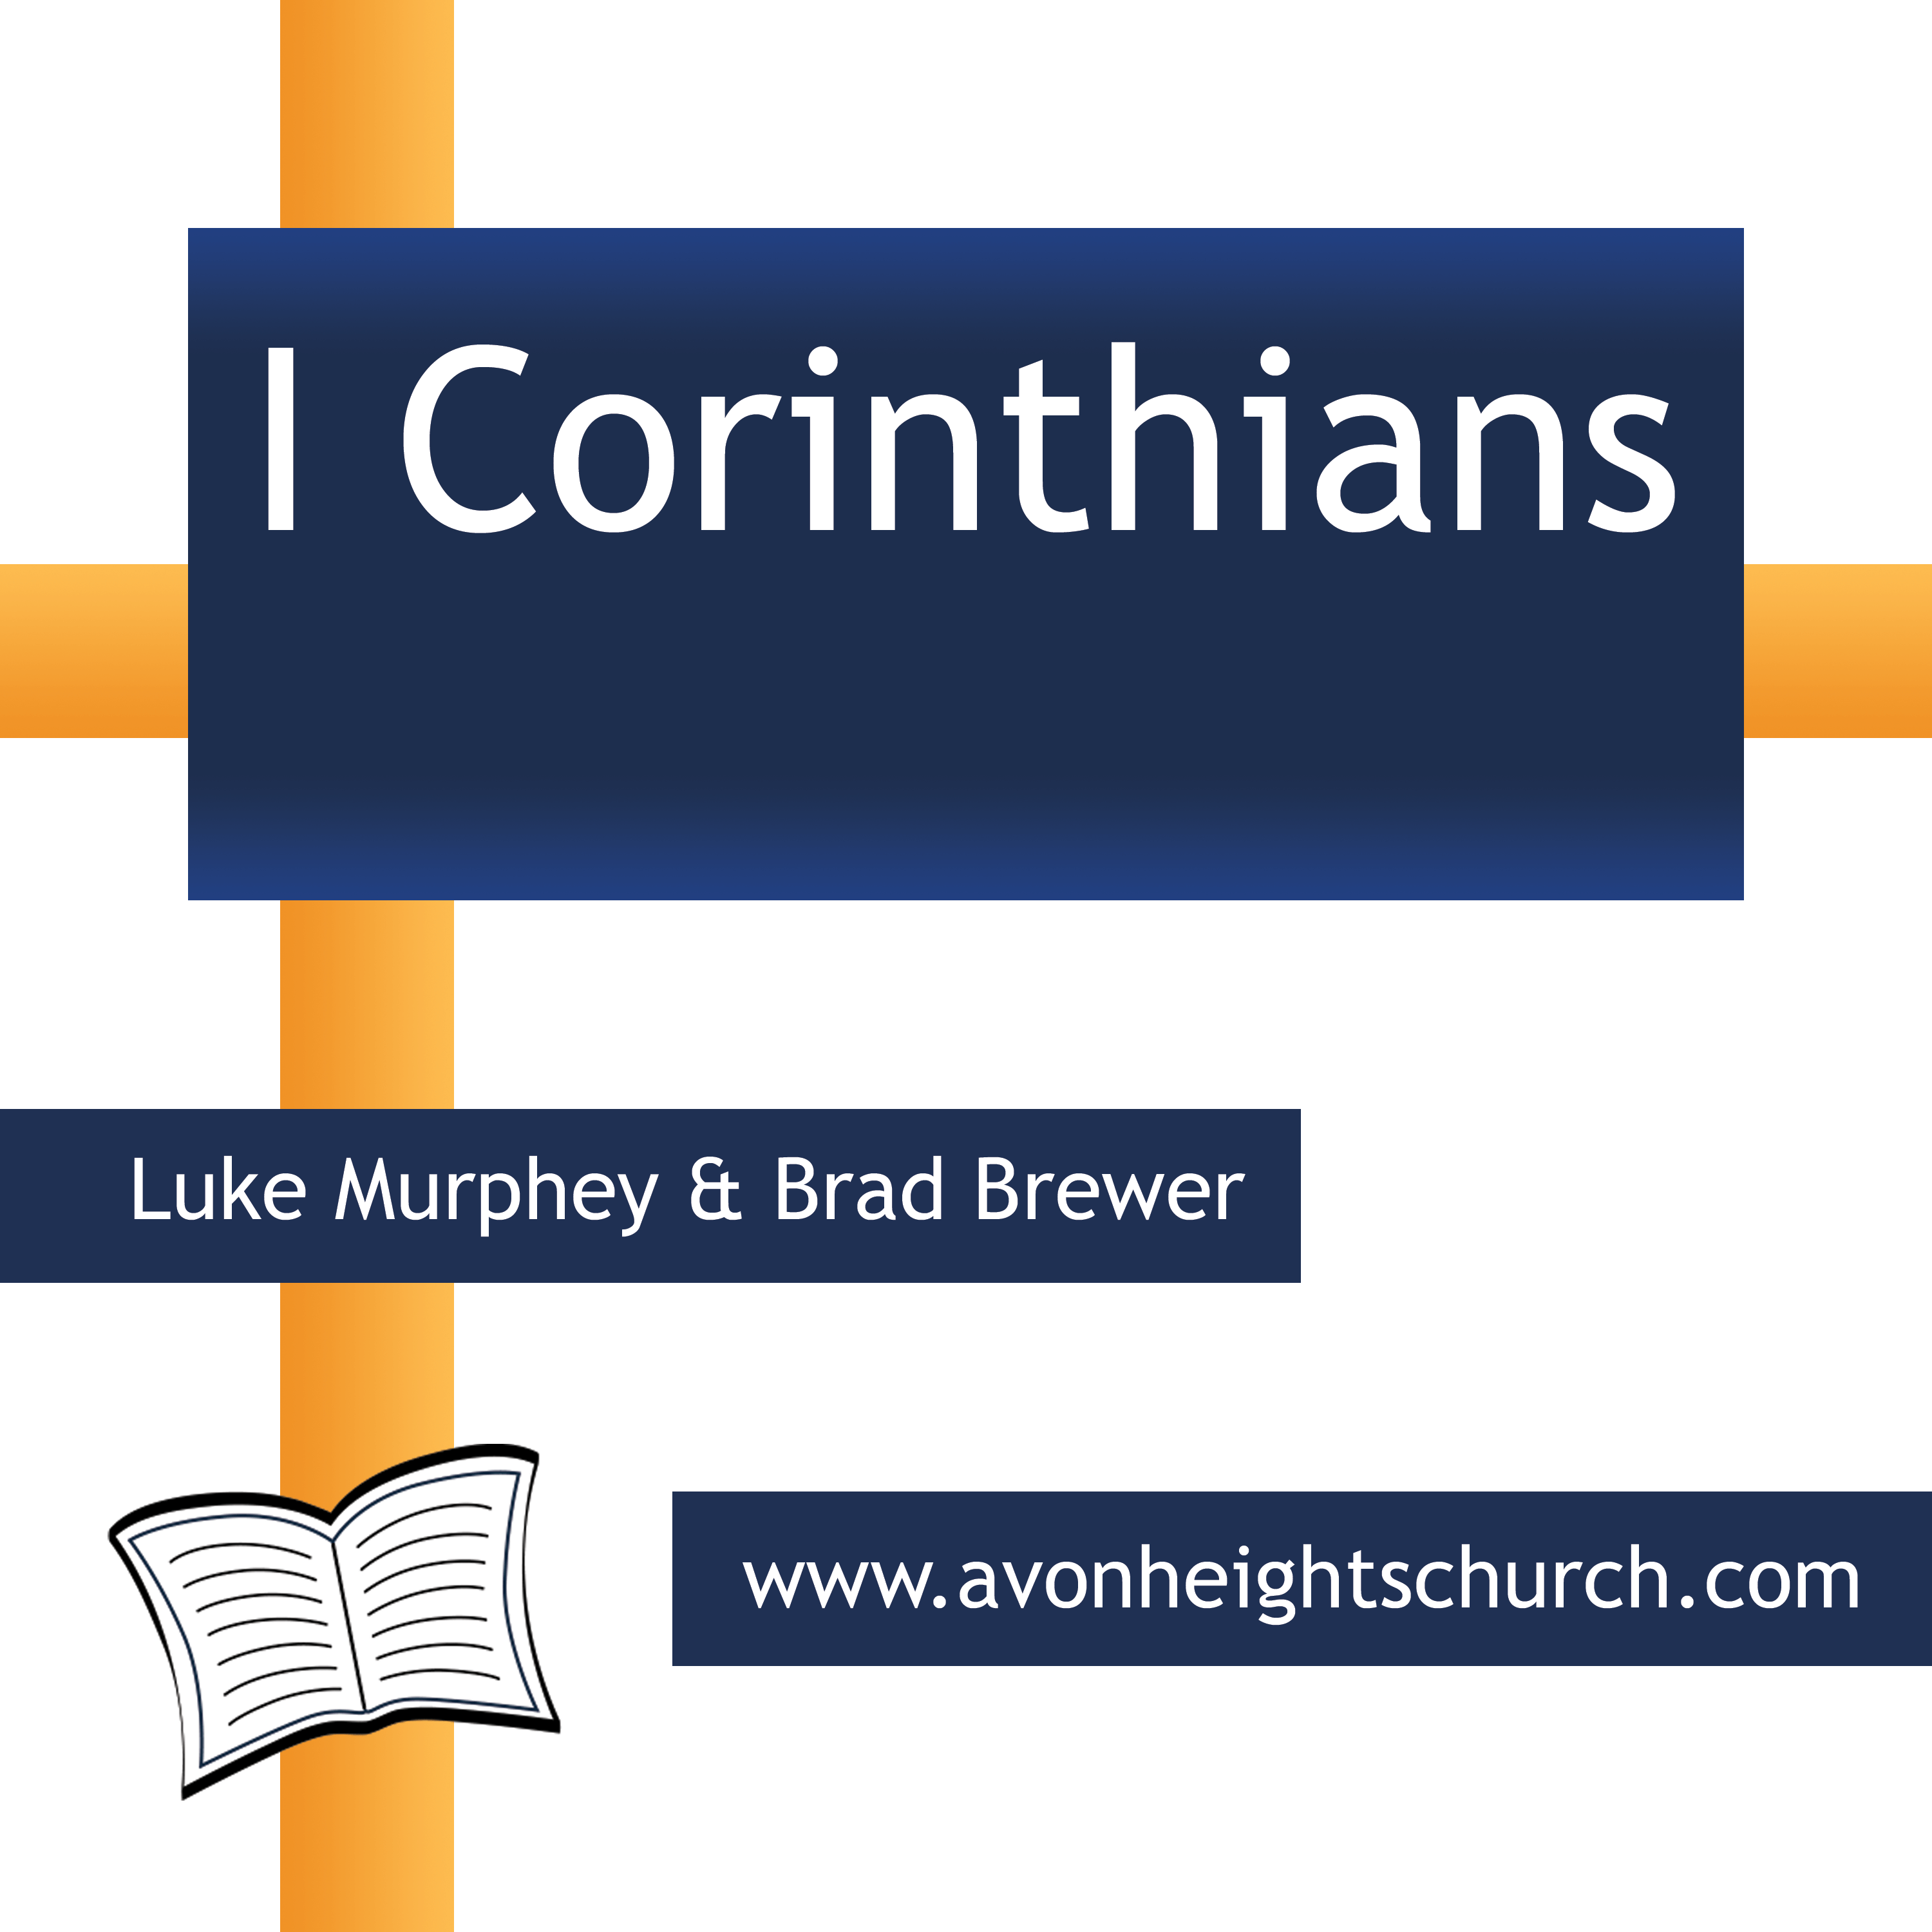 I Corinthians Review